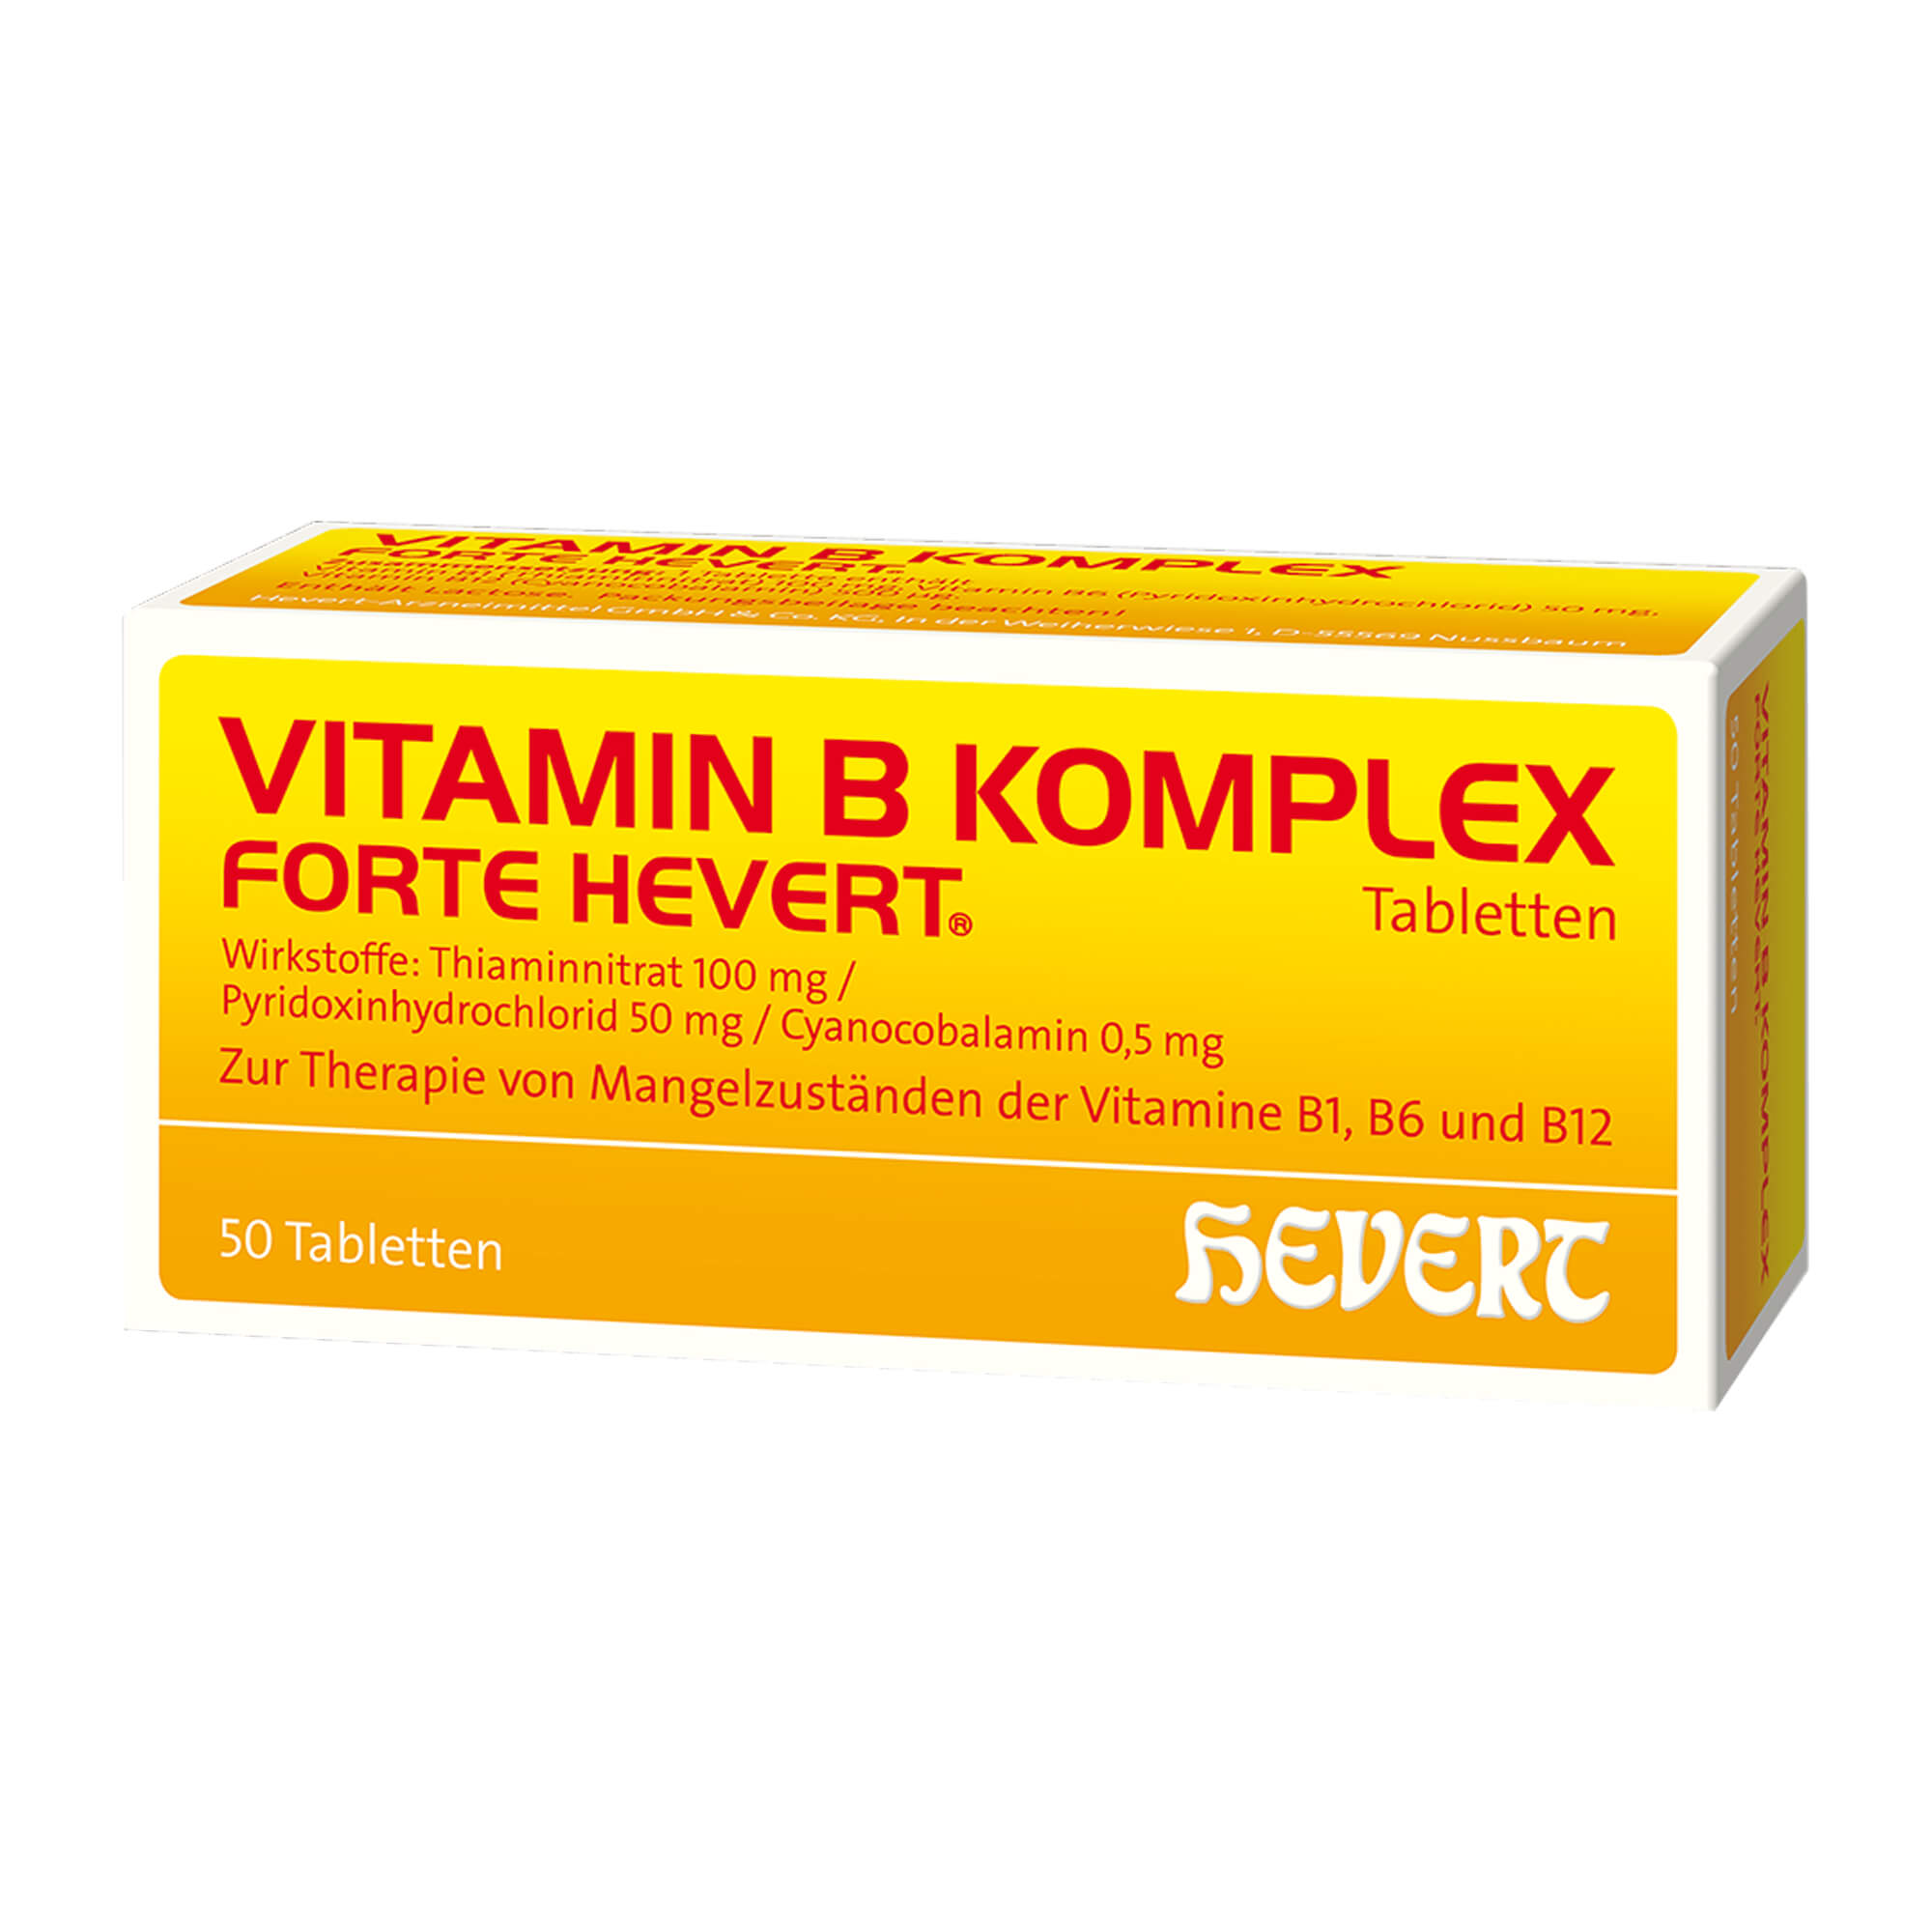 Vitaminpräparat bei Vitamin B1-, B6- und B12-Mangel.